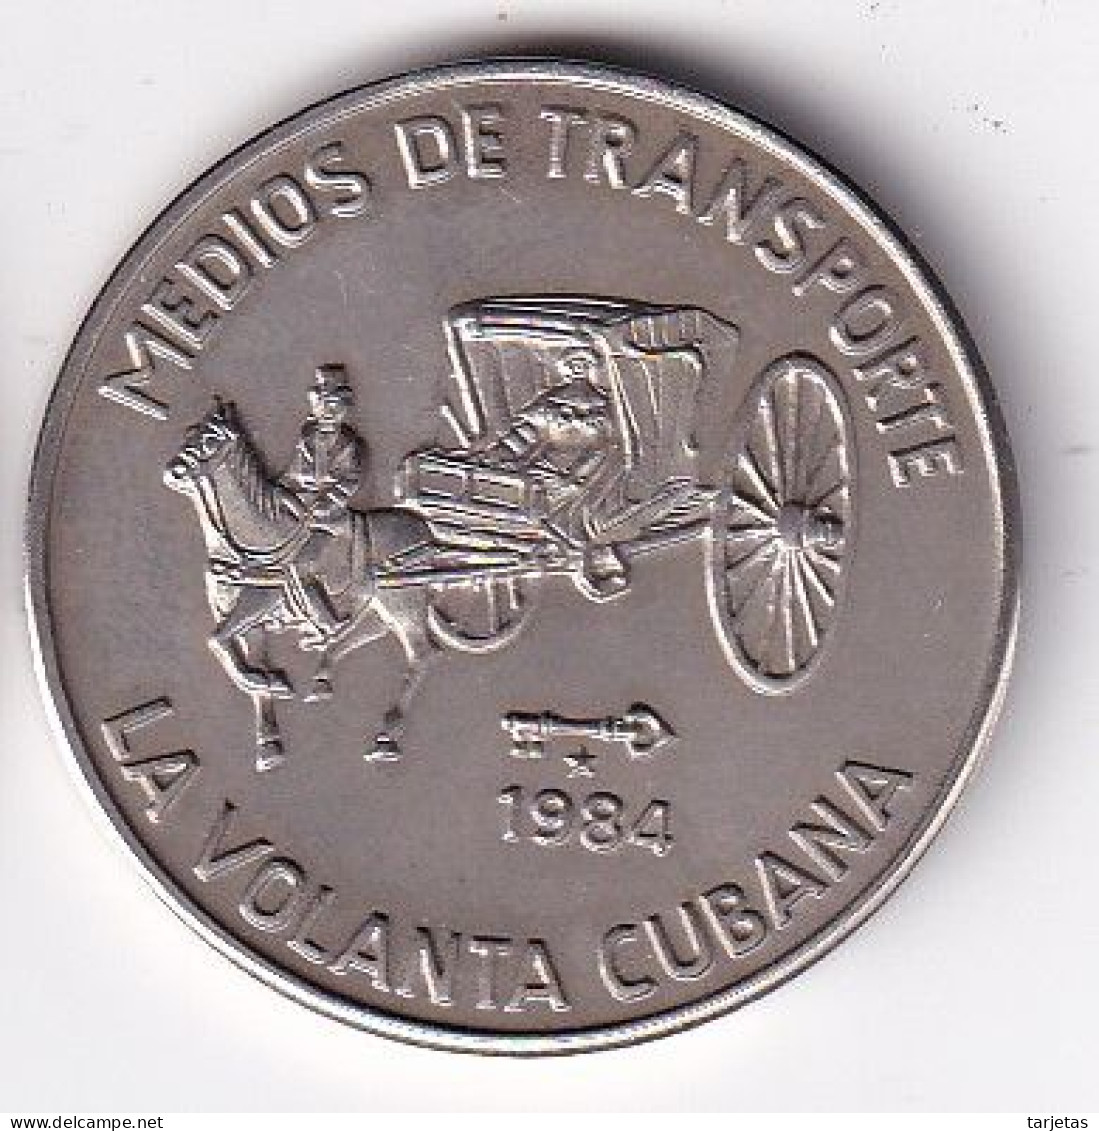 MONEDA DE CUBA DE 1 PESO DEL AÑO 1983 DE MEDIOS TRANSPORTE - LA VOLANTA (COIN) (NUEVA - UNC) - Cuba